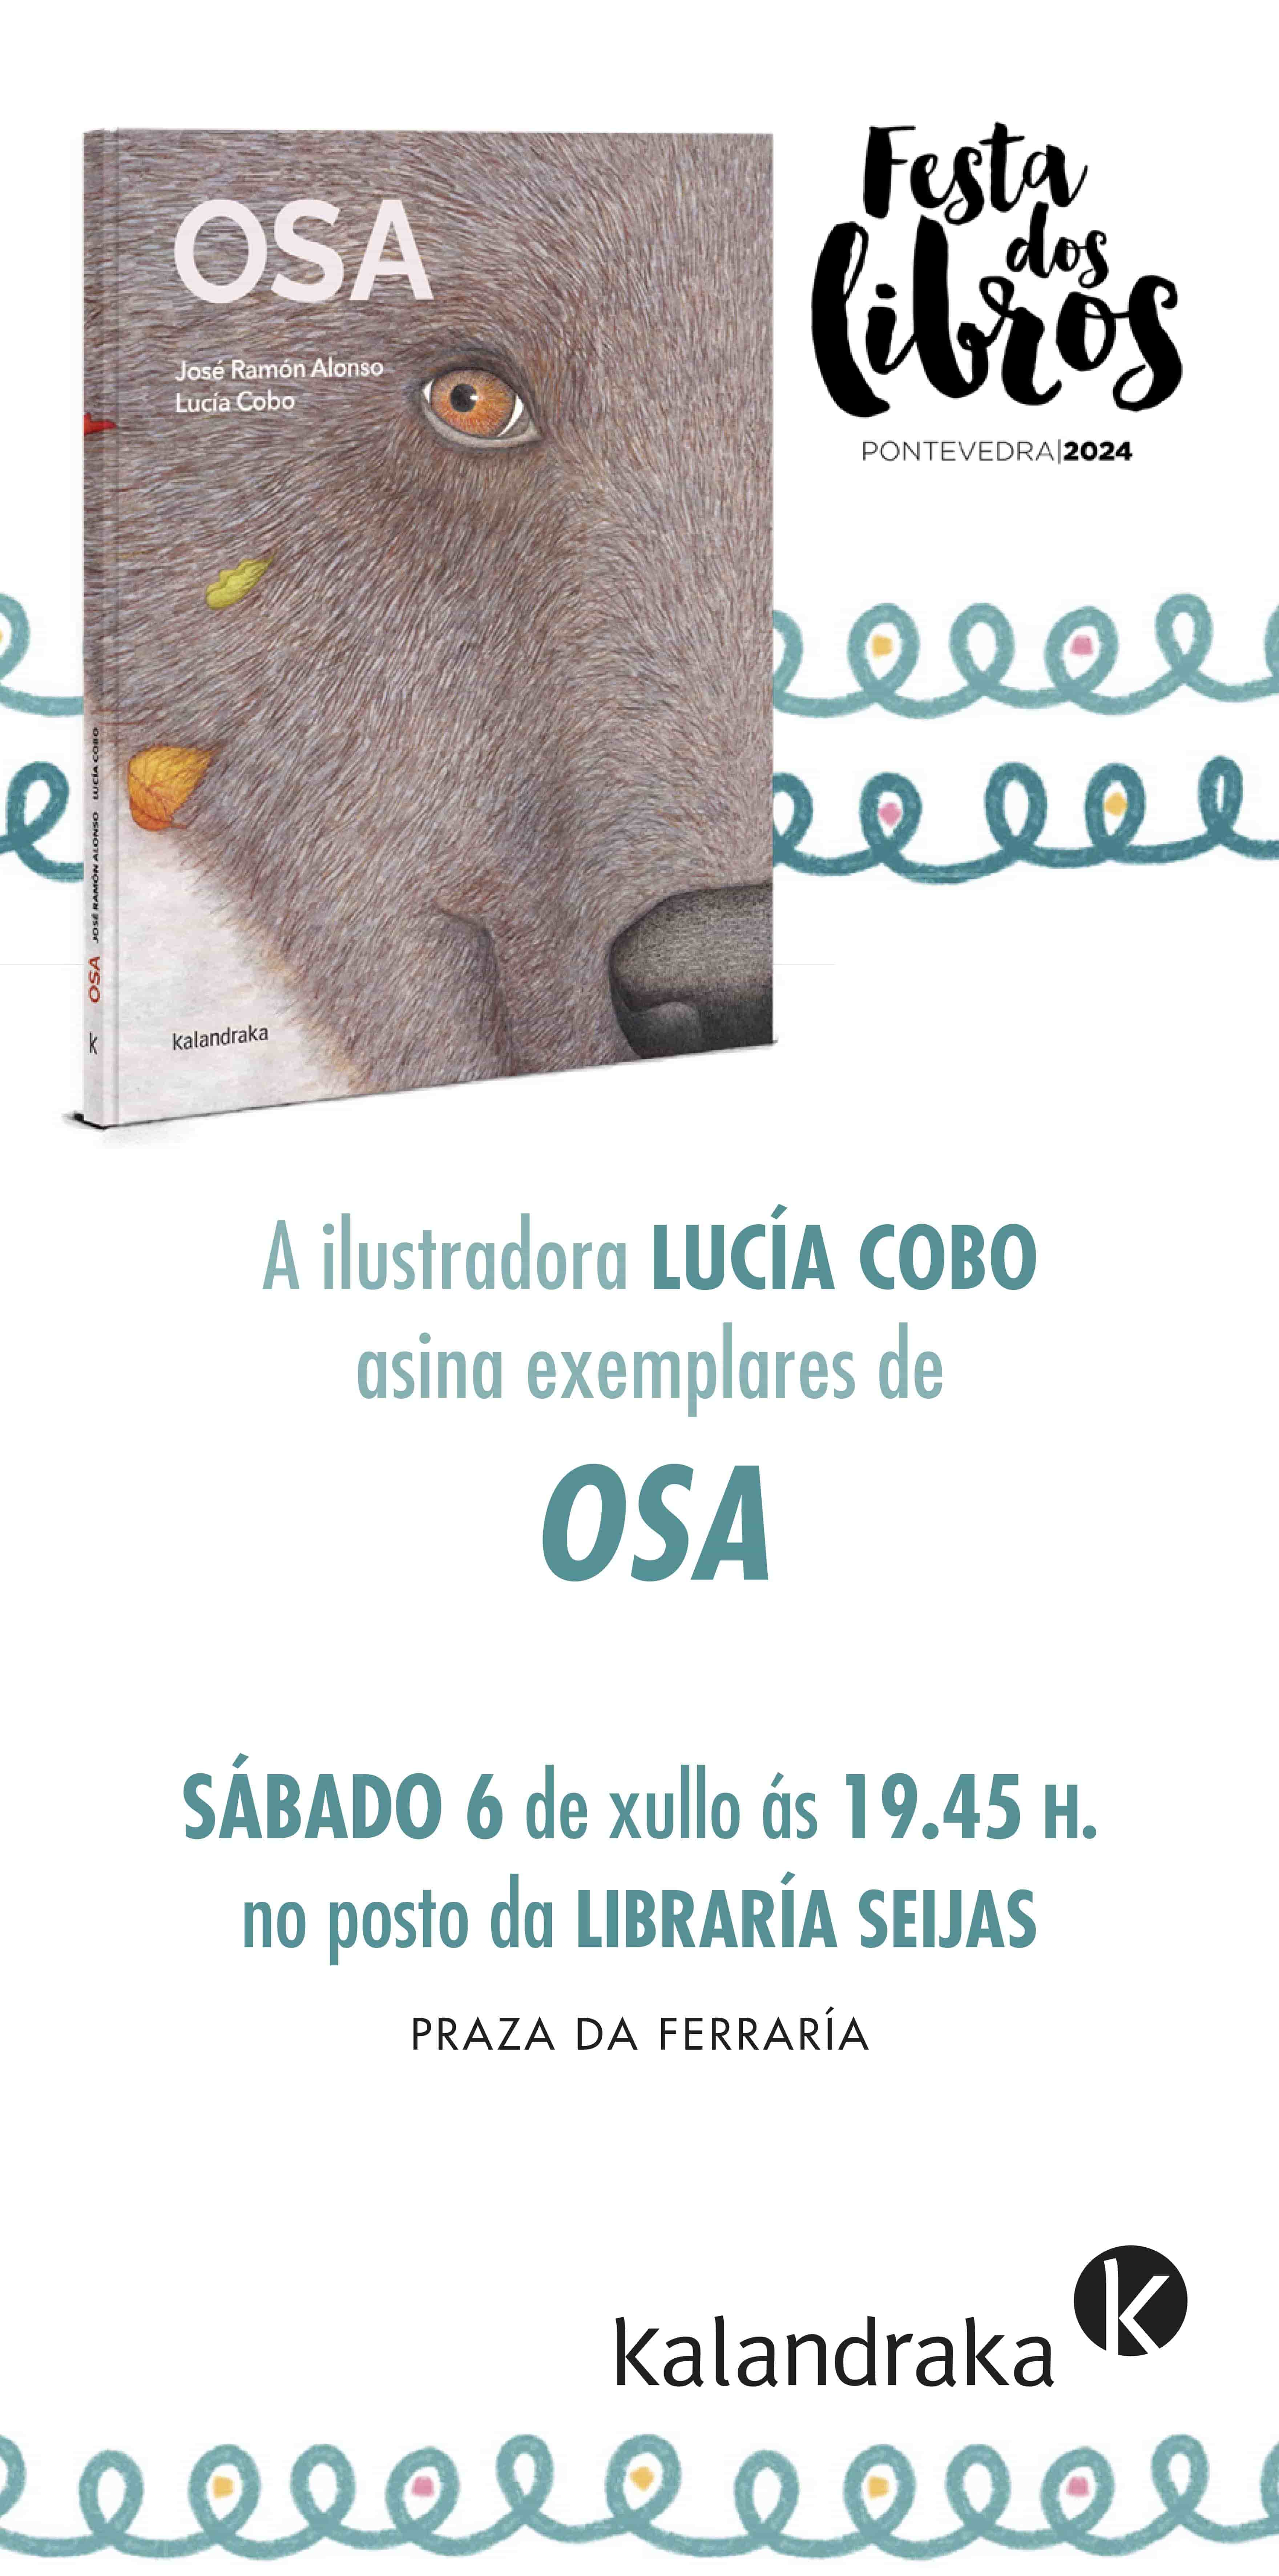 FESTA DOS LIBROS DE PONTEVEDRA: LUCÍA COBO ASINA “OSA”